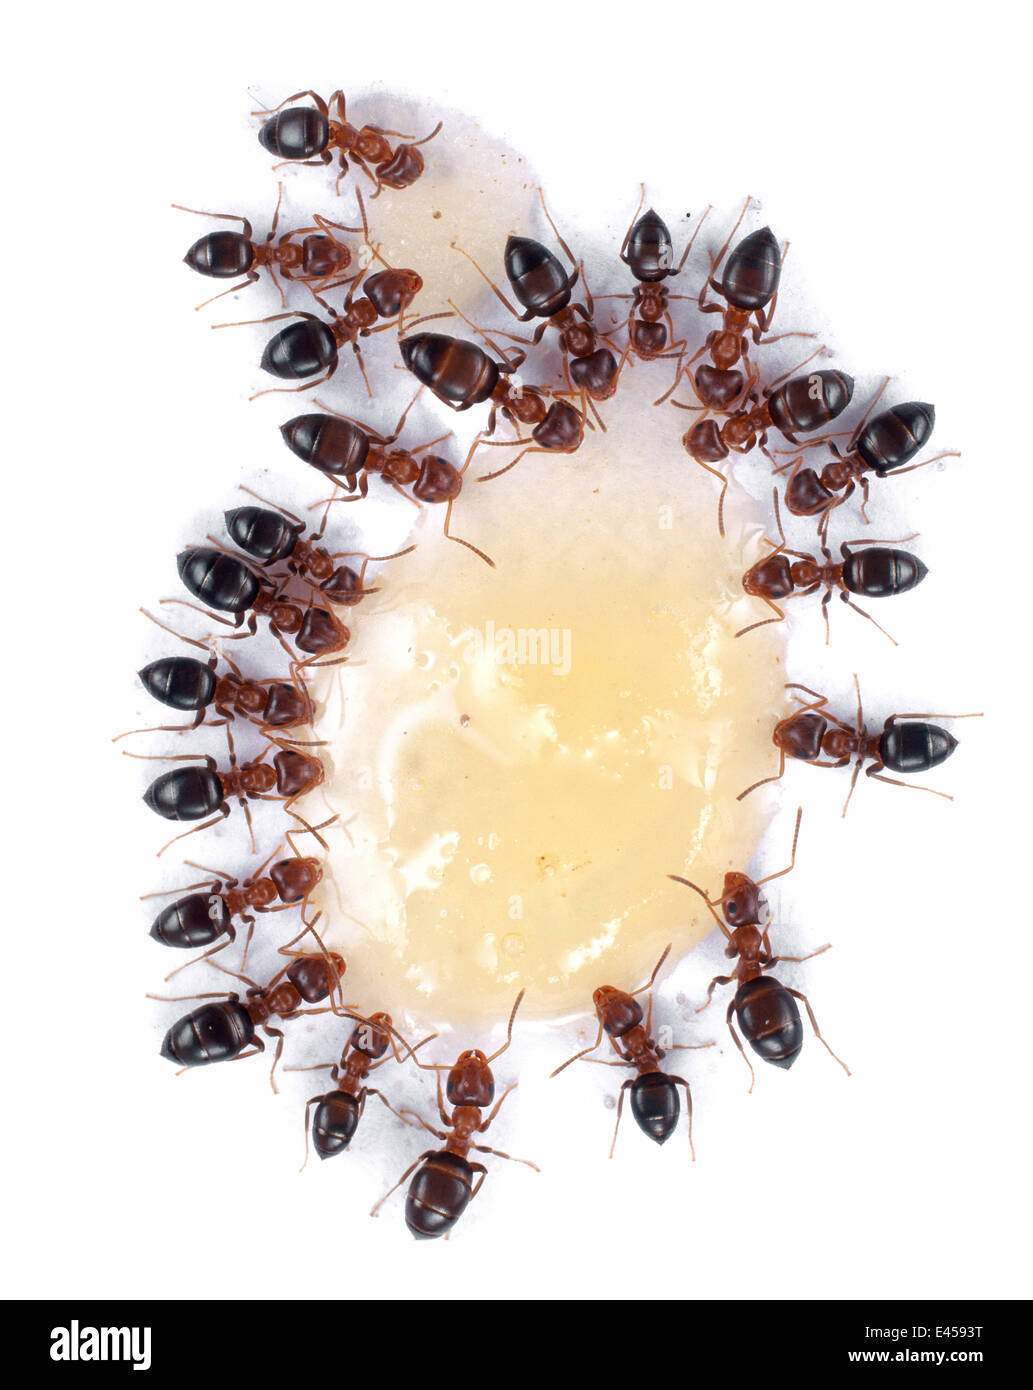 Las hormigas (no identificado), alimentándose de la miel derramada. En el Reino Unido. Foto de stock